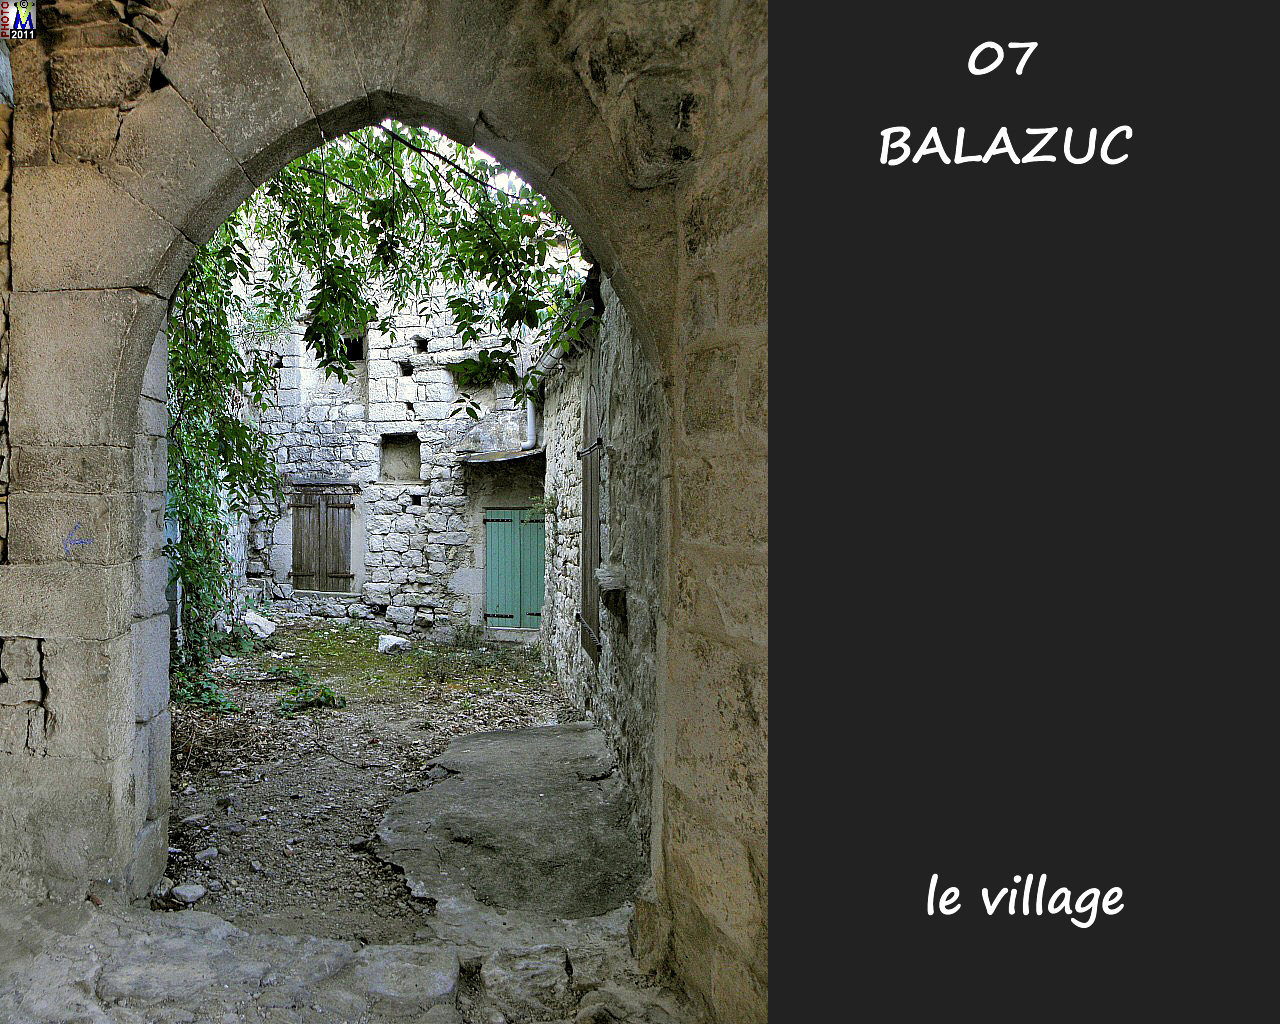 07BALAZUC_village_172.jpg